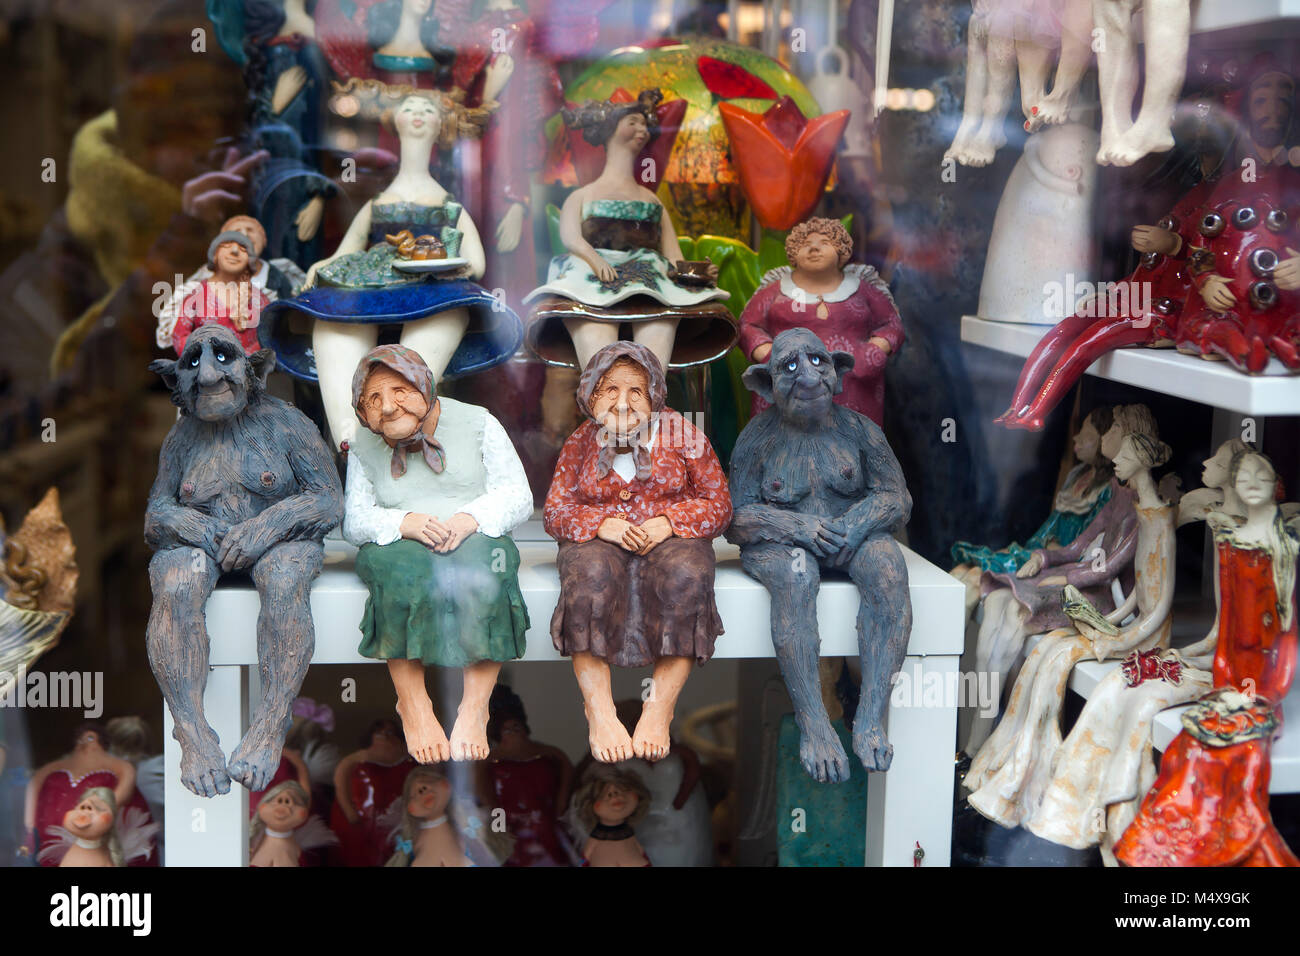 Cracovia, Polonia - Febrero 12, 2018 figuras en una tienda de souvenirs Foto de stock